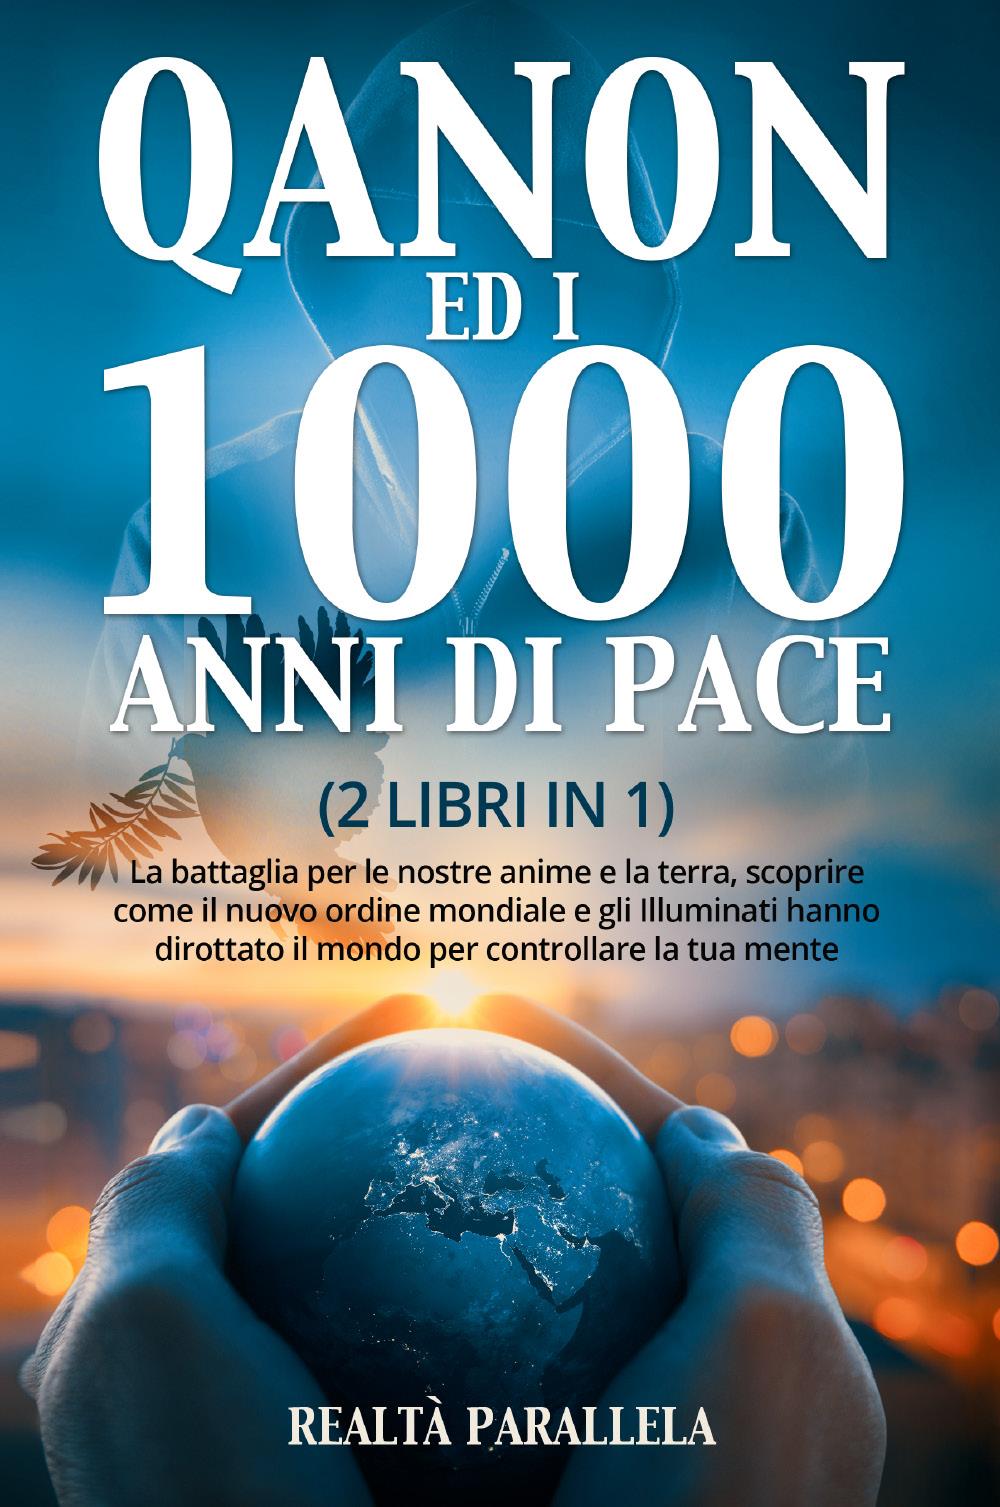 Qanon ed i 1000 anni di pace (2 libri in 1)